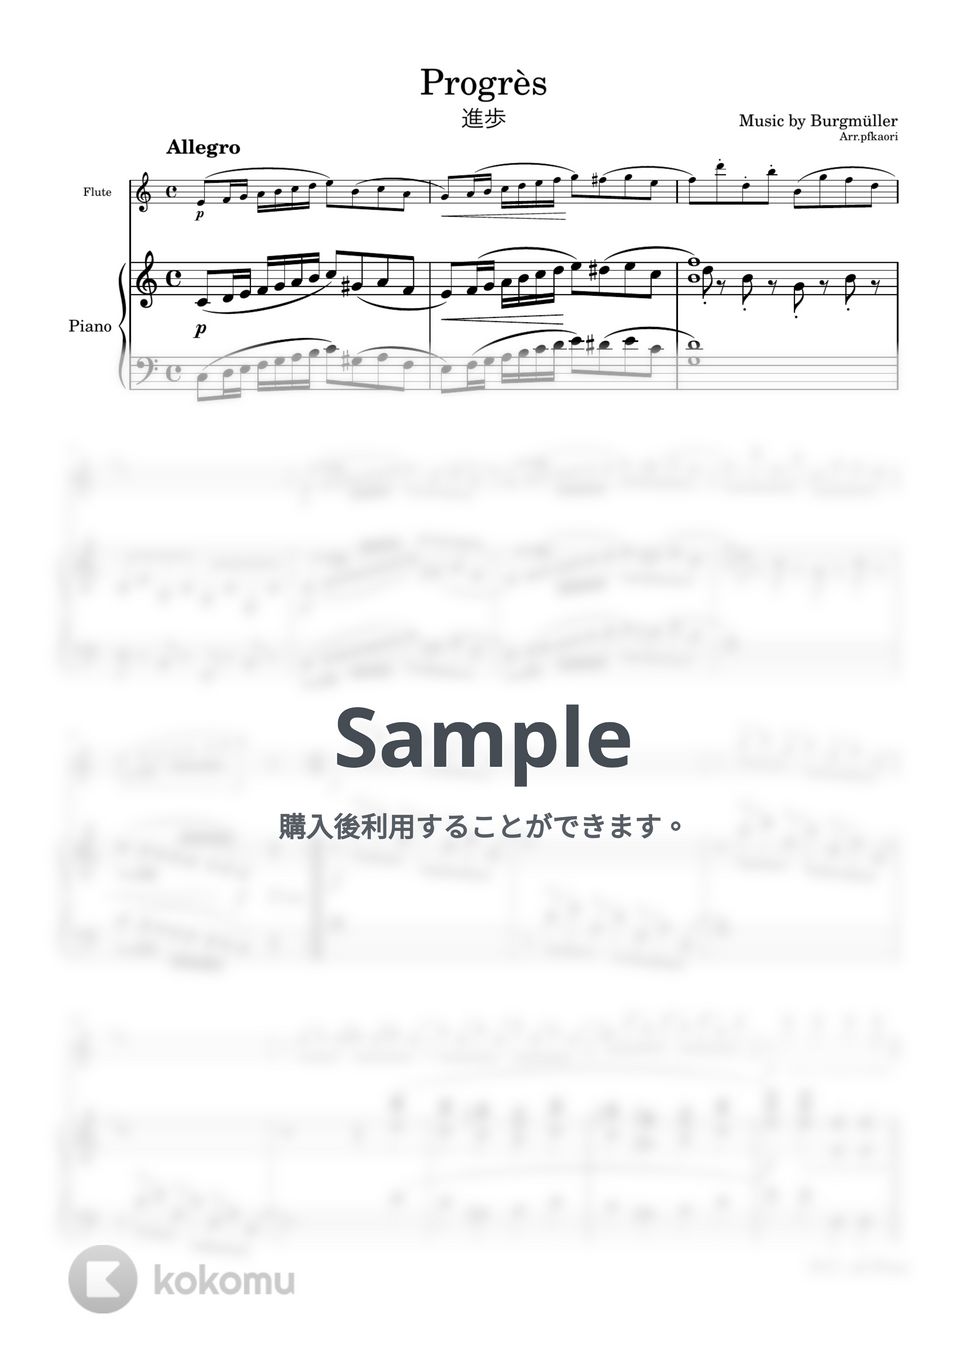 ブルグミュラー - 進歩 (フルート&ピアノ) by pfkaori